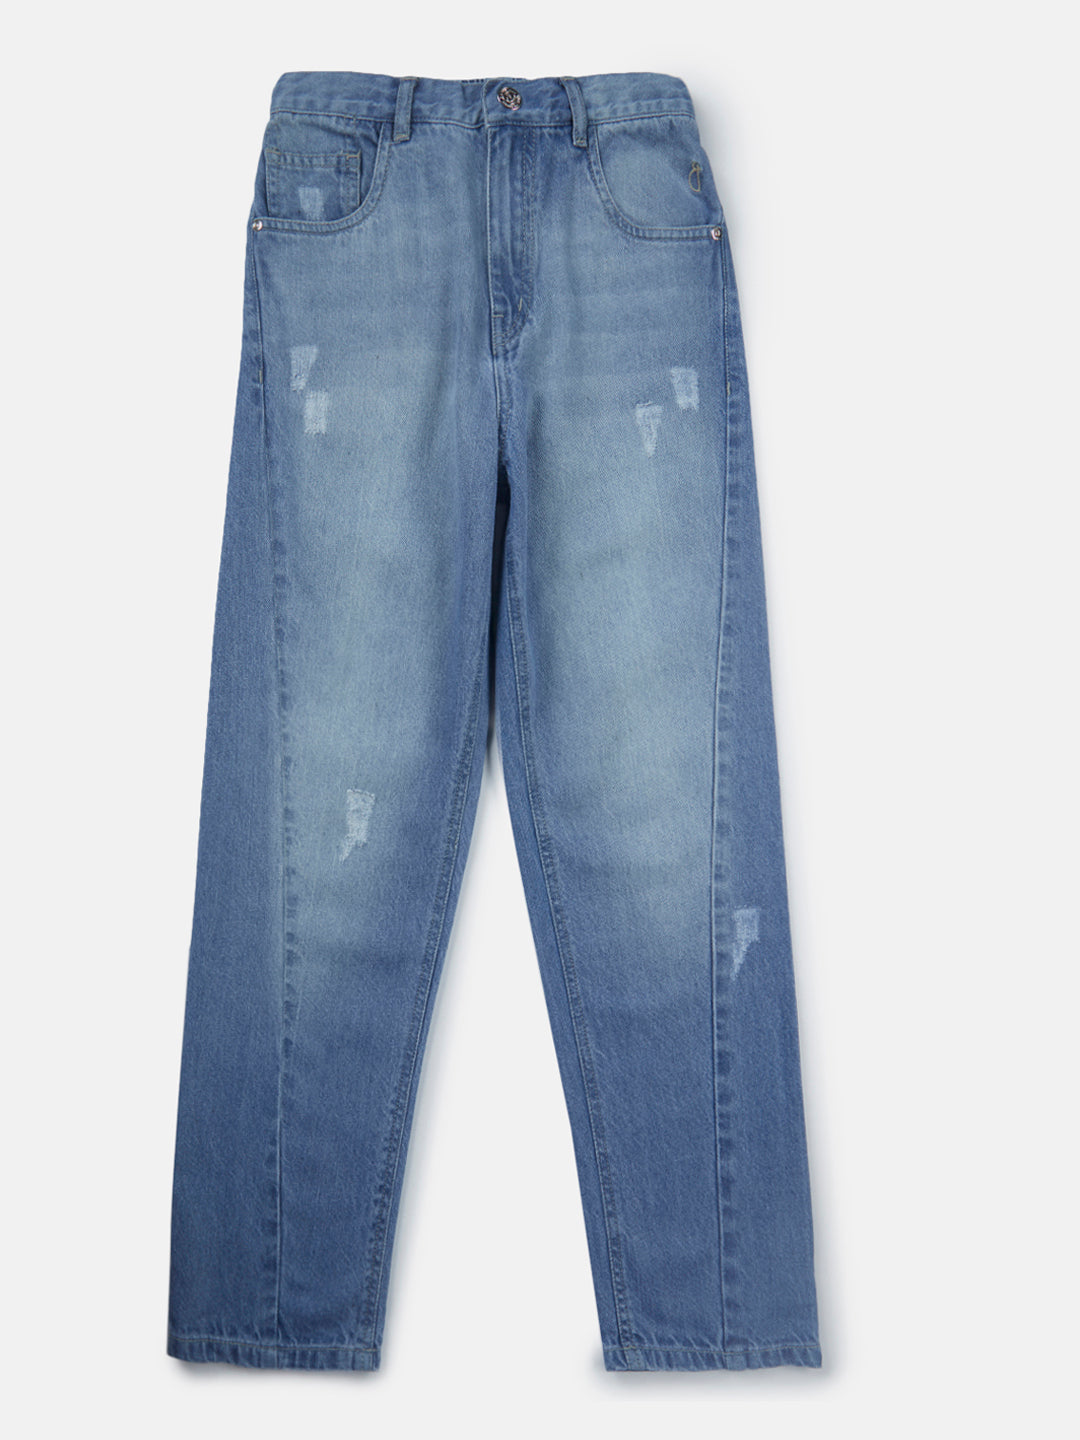 Boys Blue Washed Denim Jeans